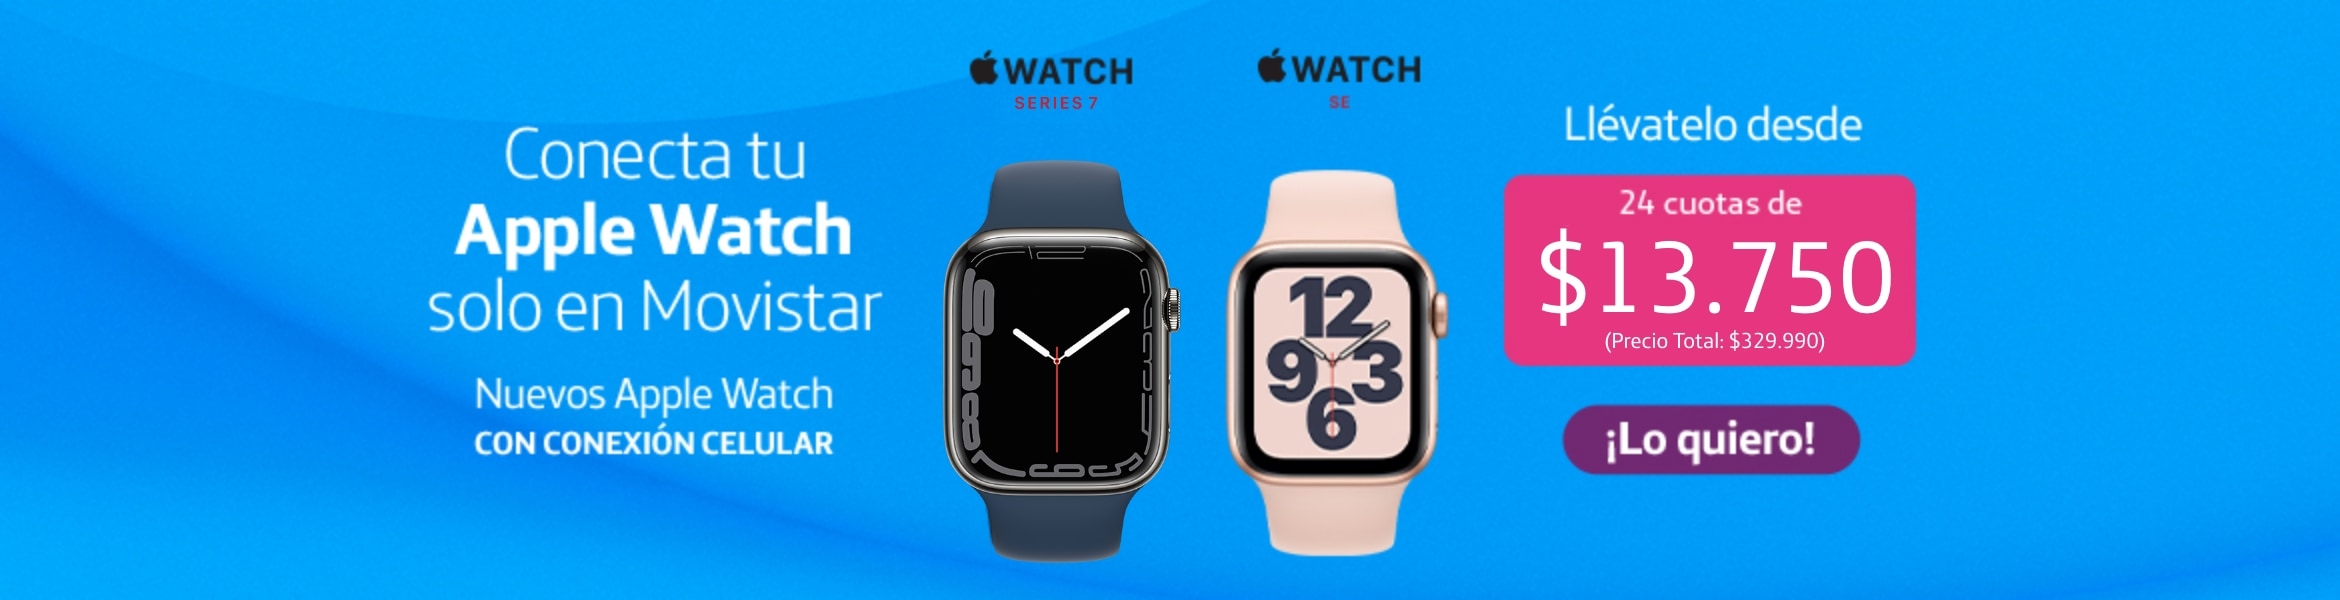 Nuevos Apple Watch Series 6 y Apple Watch SE con conexión a red celular Movistar